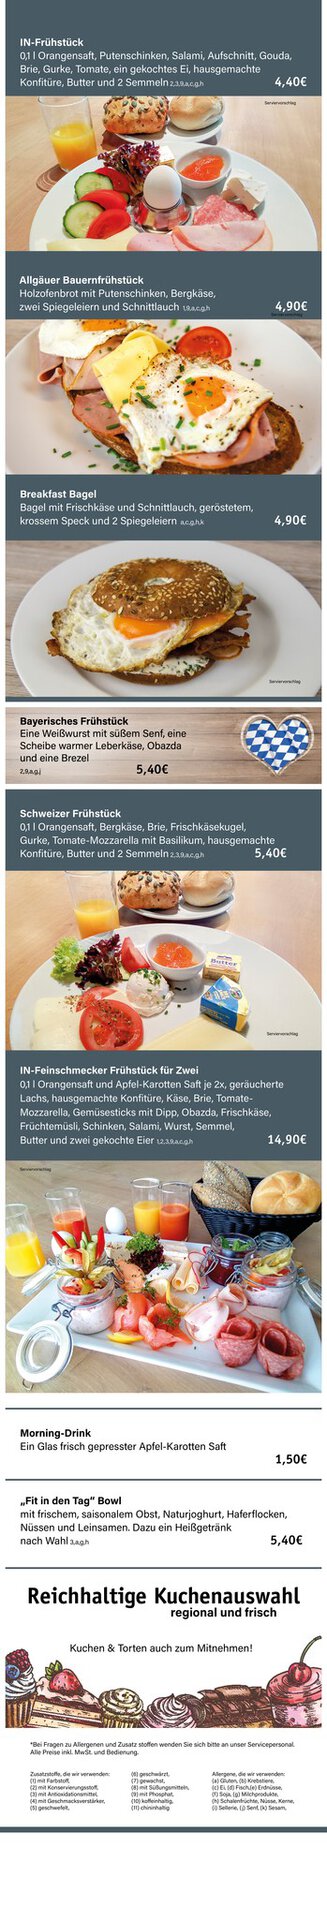 Gemütlich Frühstücken im Culinarium bei Möbel Inhofer. Aktuelle Frühstückskarte im Bedienrestaurant